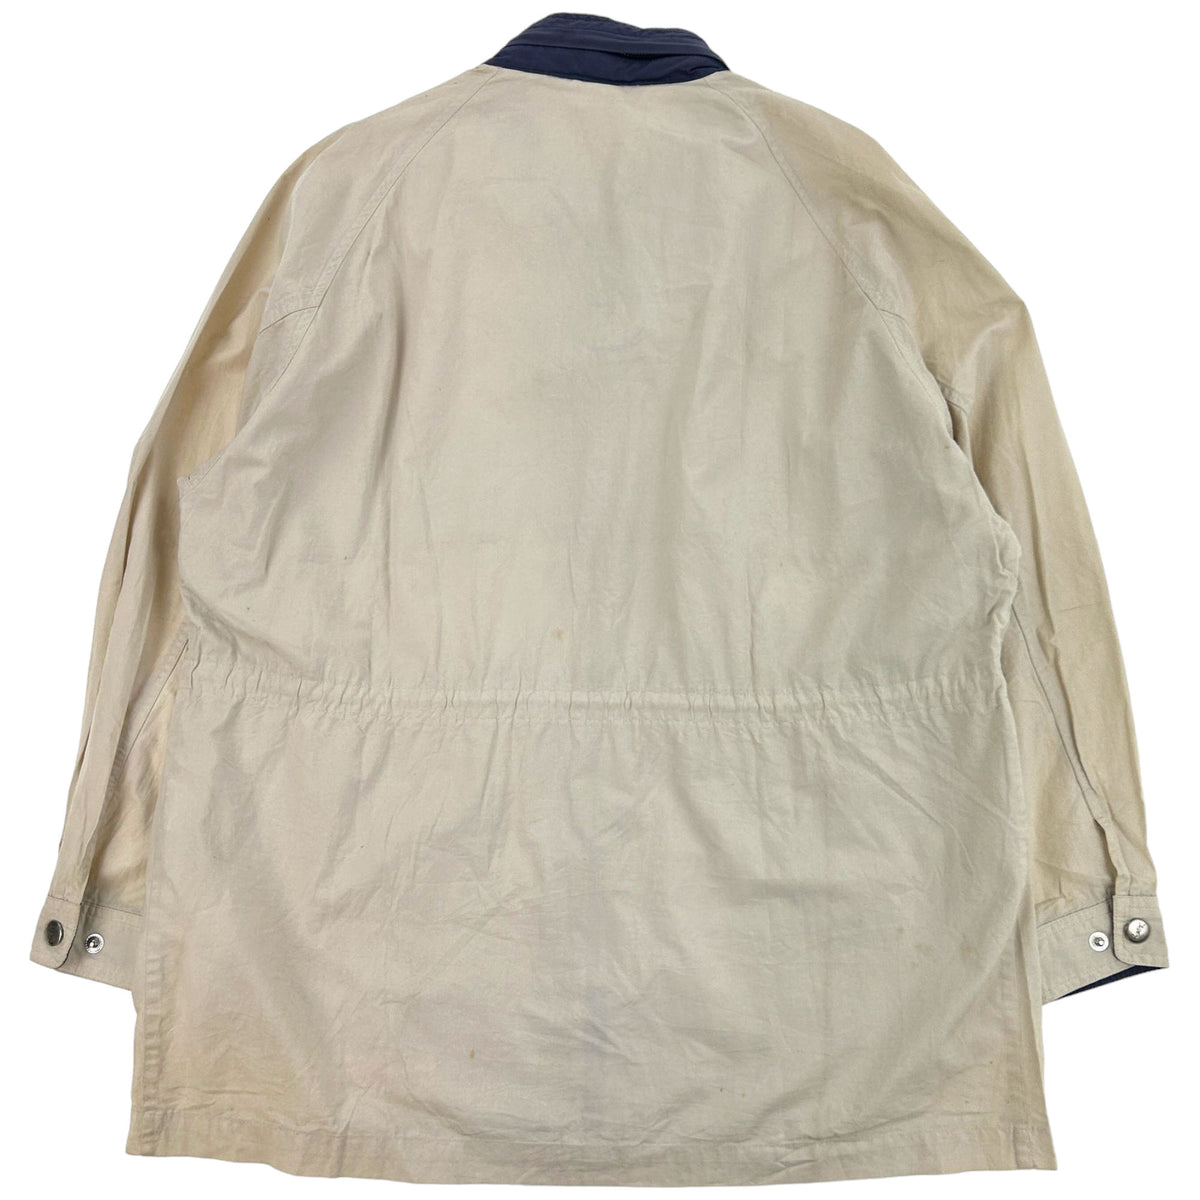 Vintage Yves Saint Laurent Jacket Size L